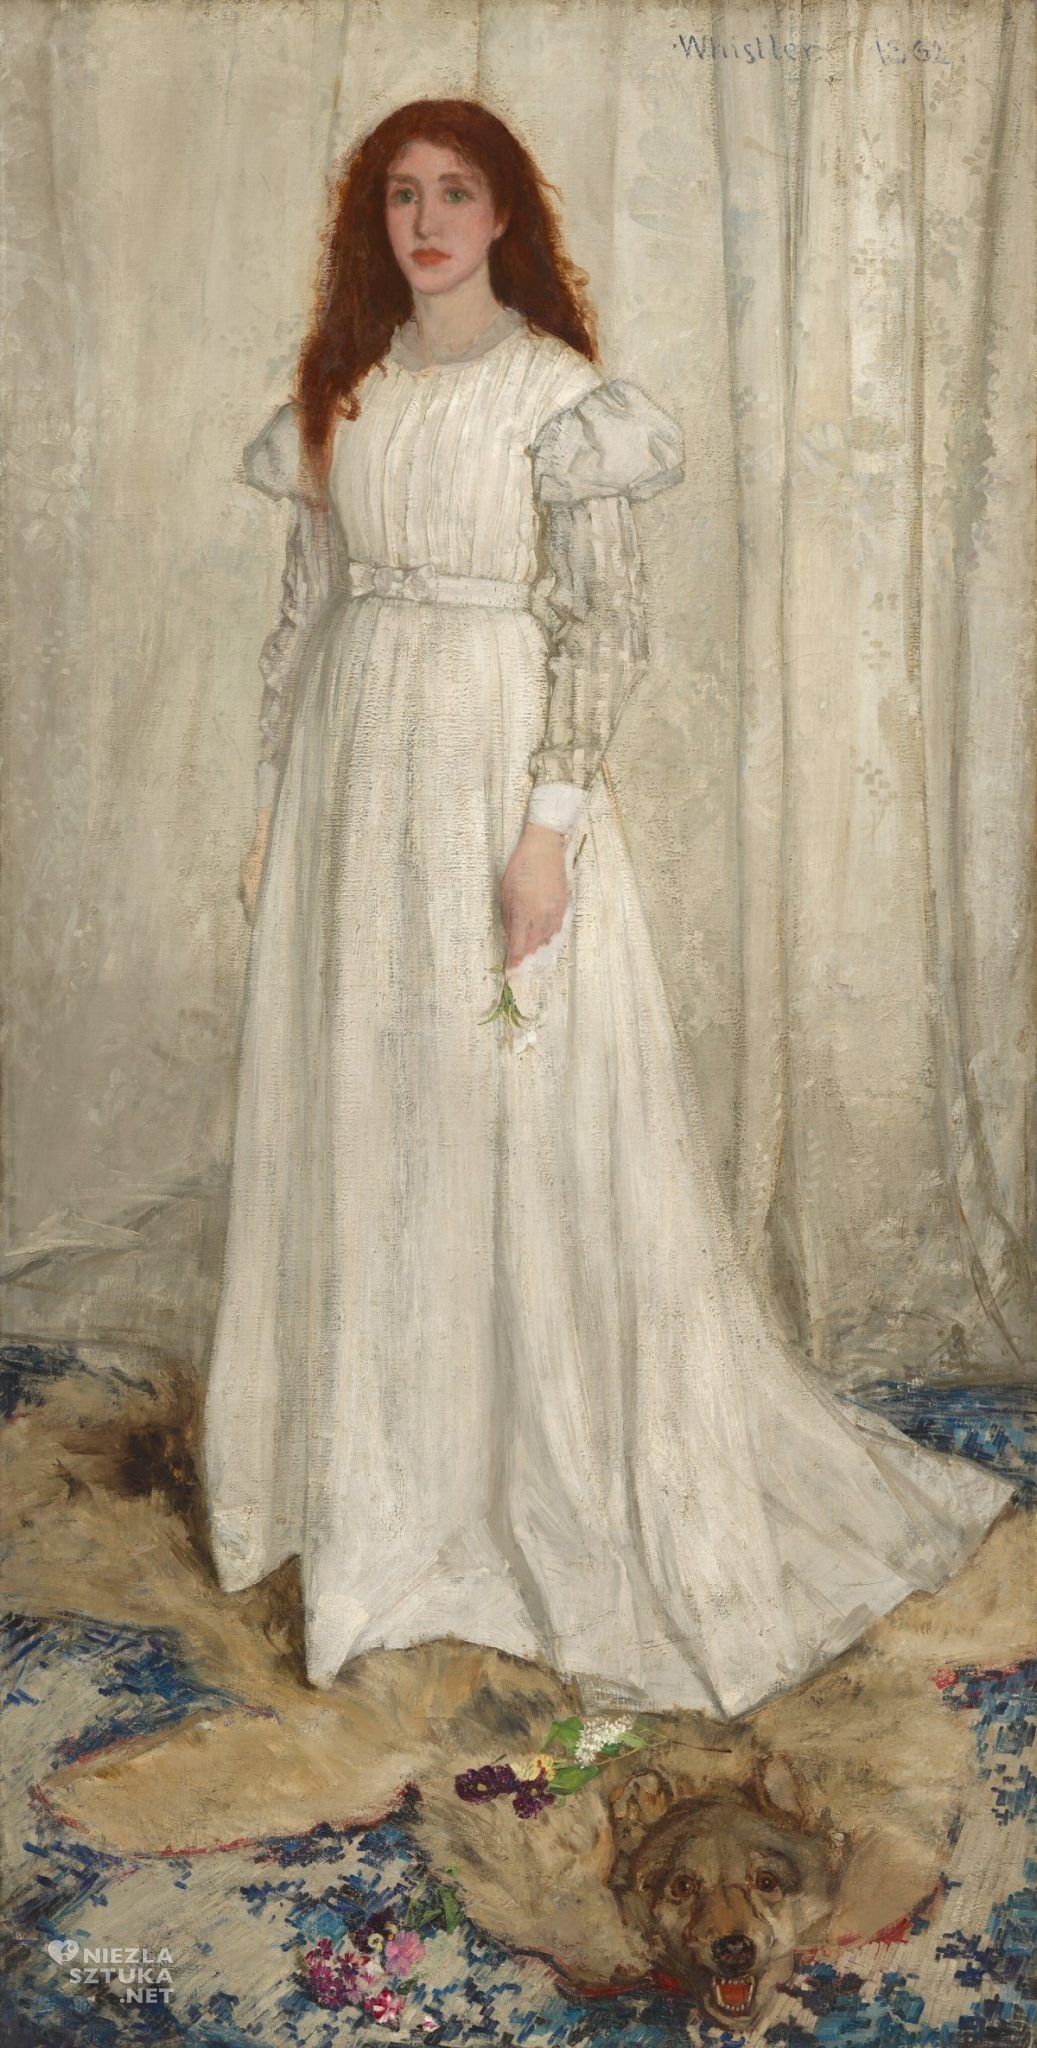 James McNeill Whistler, Symfonia w bieli nr 1, dziewczyna w bieli, Niezła sztuka